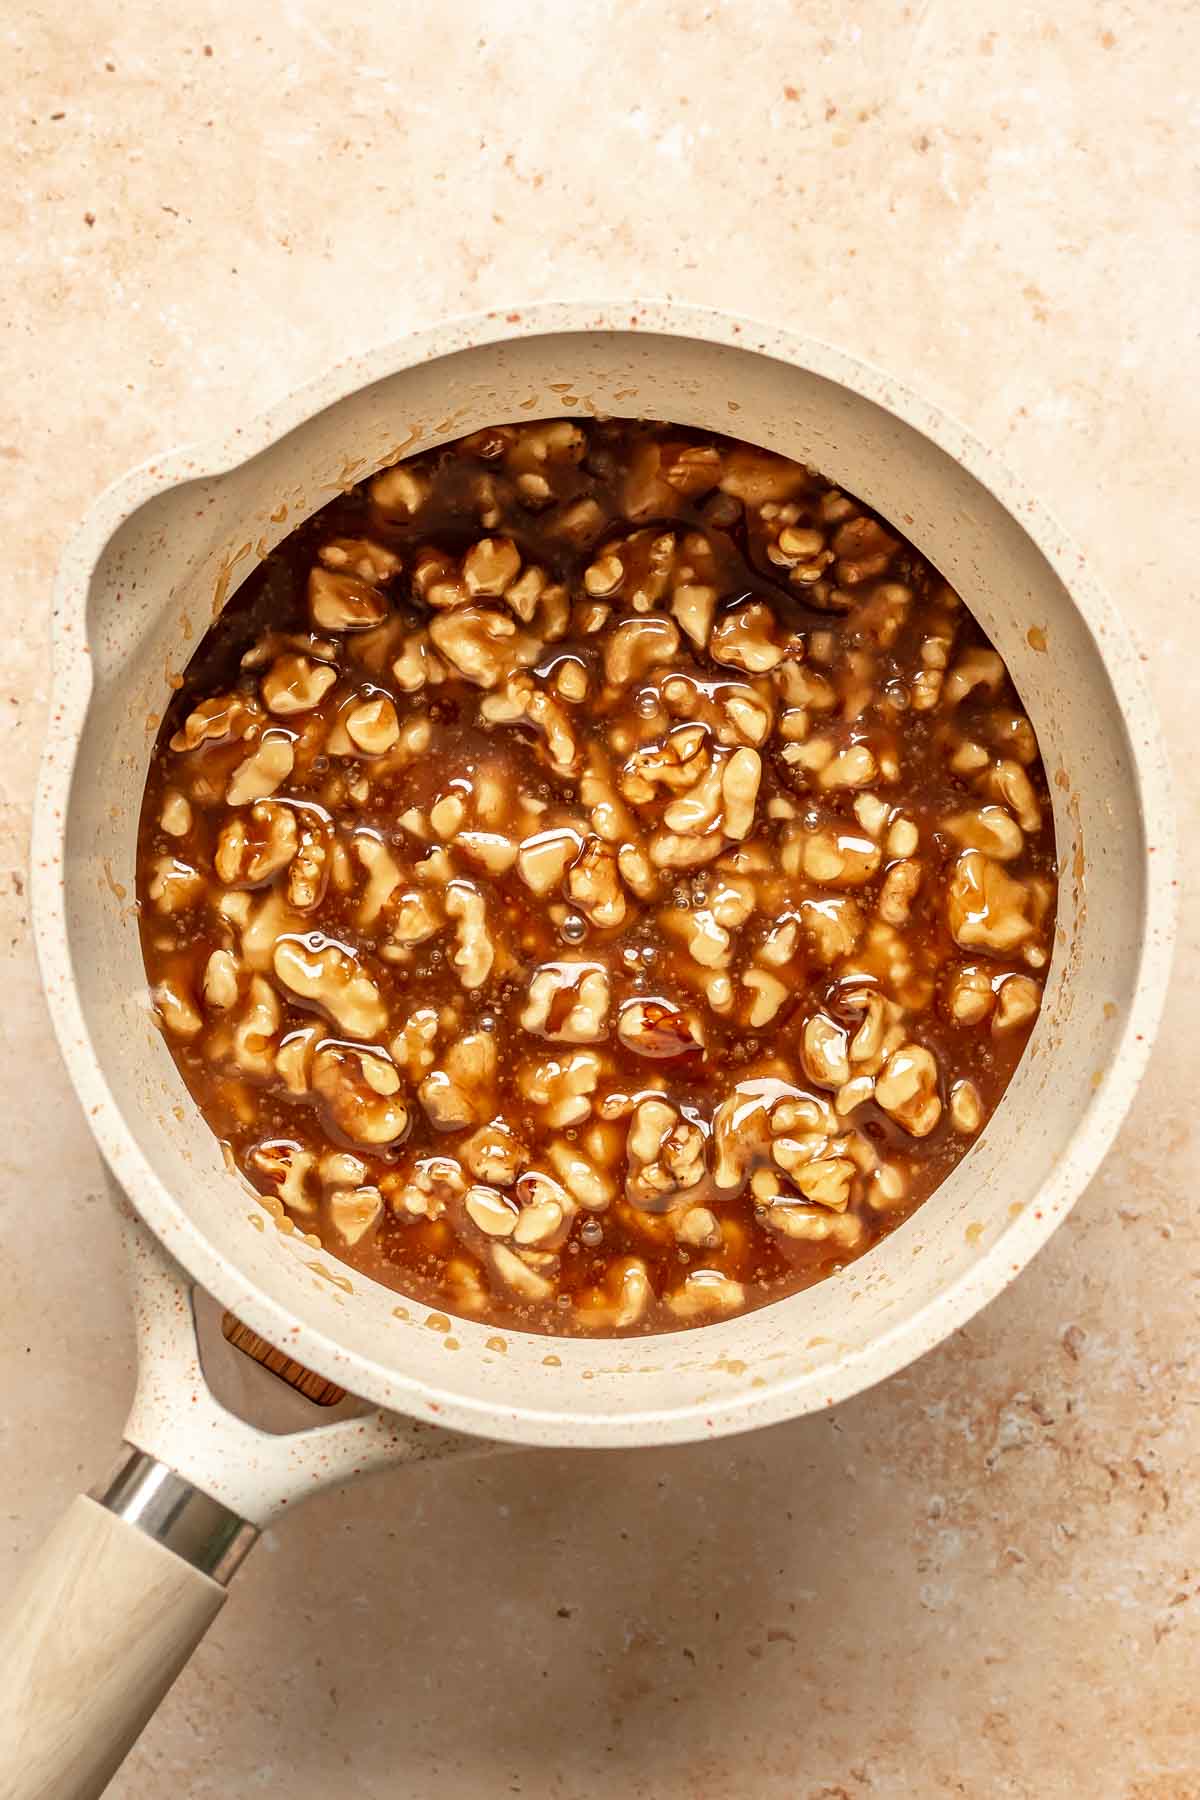 Pecans and caramel sauce in a pot.